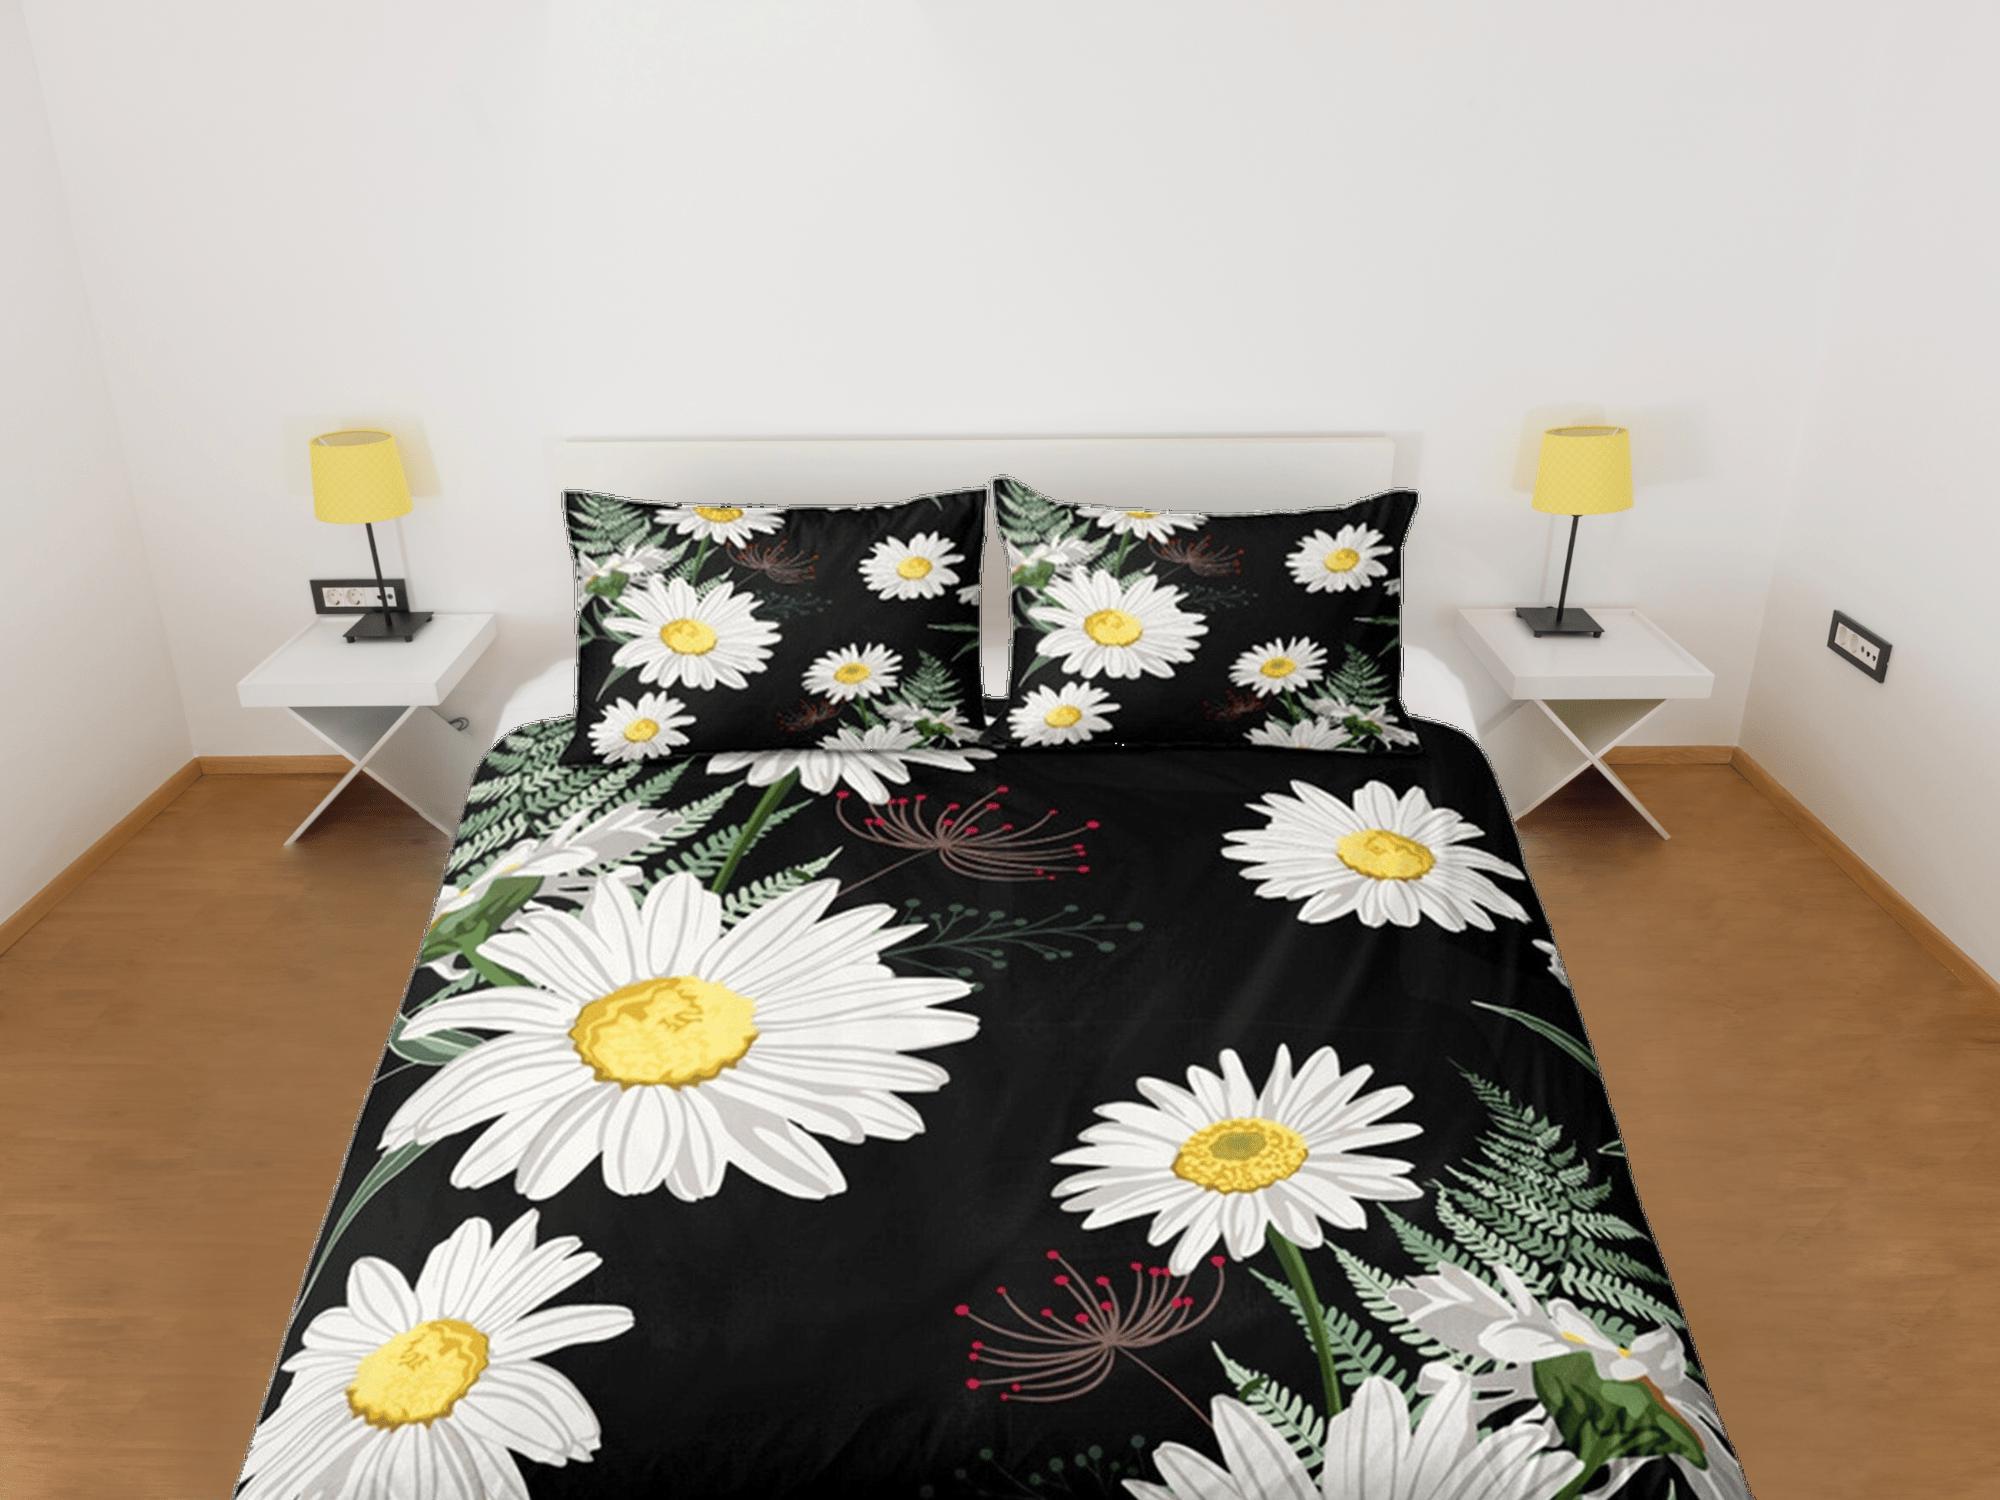 daintyduvet Black Duvet Cover Set Bedspread Dorm Bedding Set White Daisy